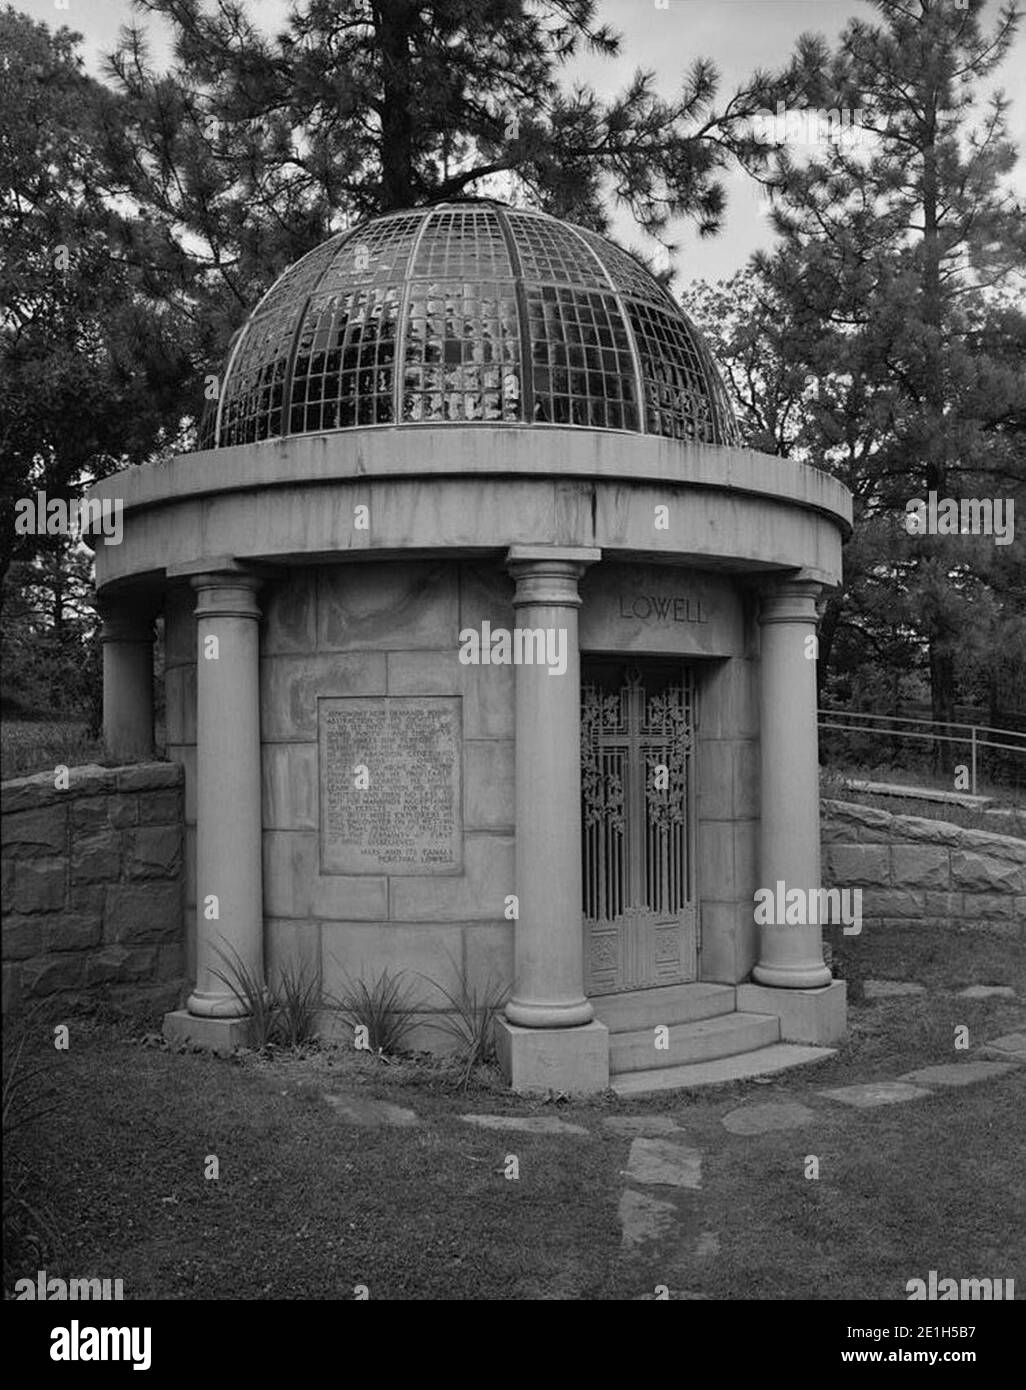 Lowell-mausoleum-1994. Stock Photo